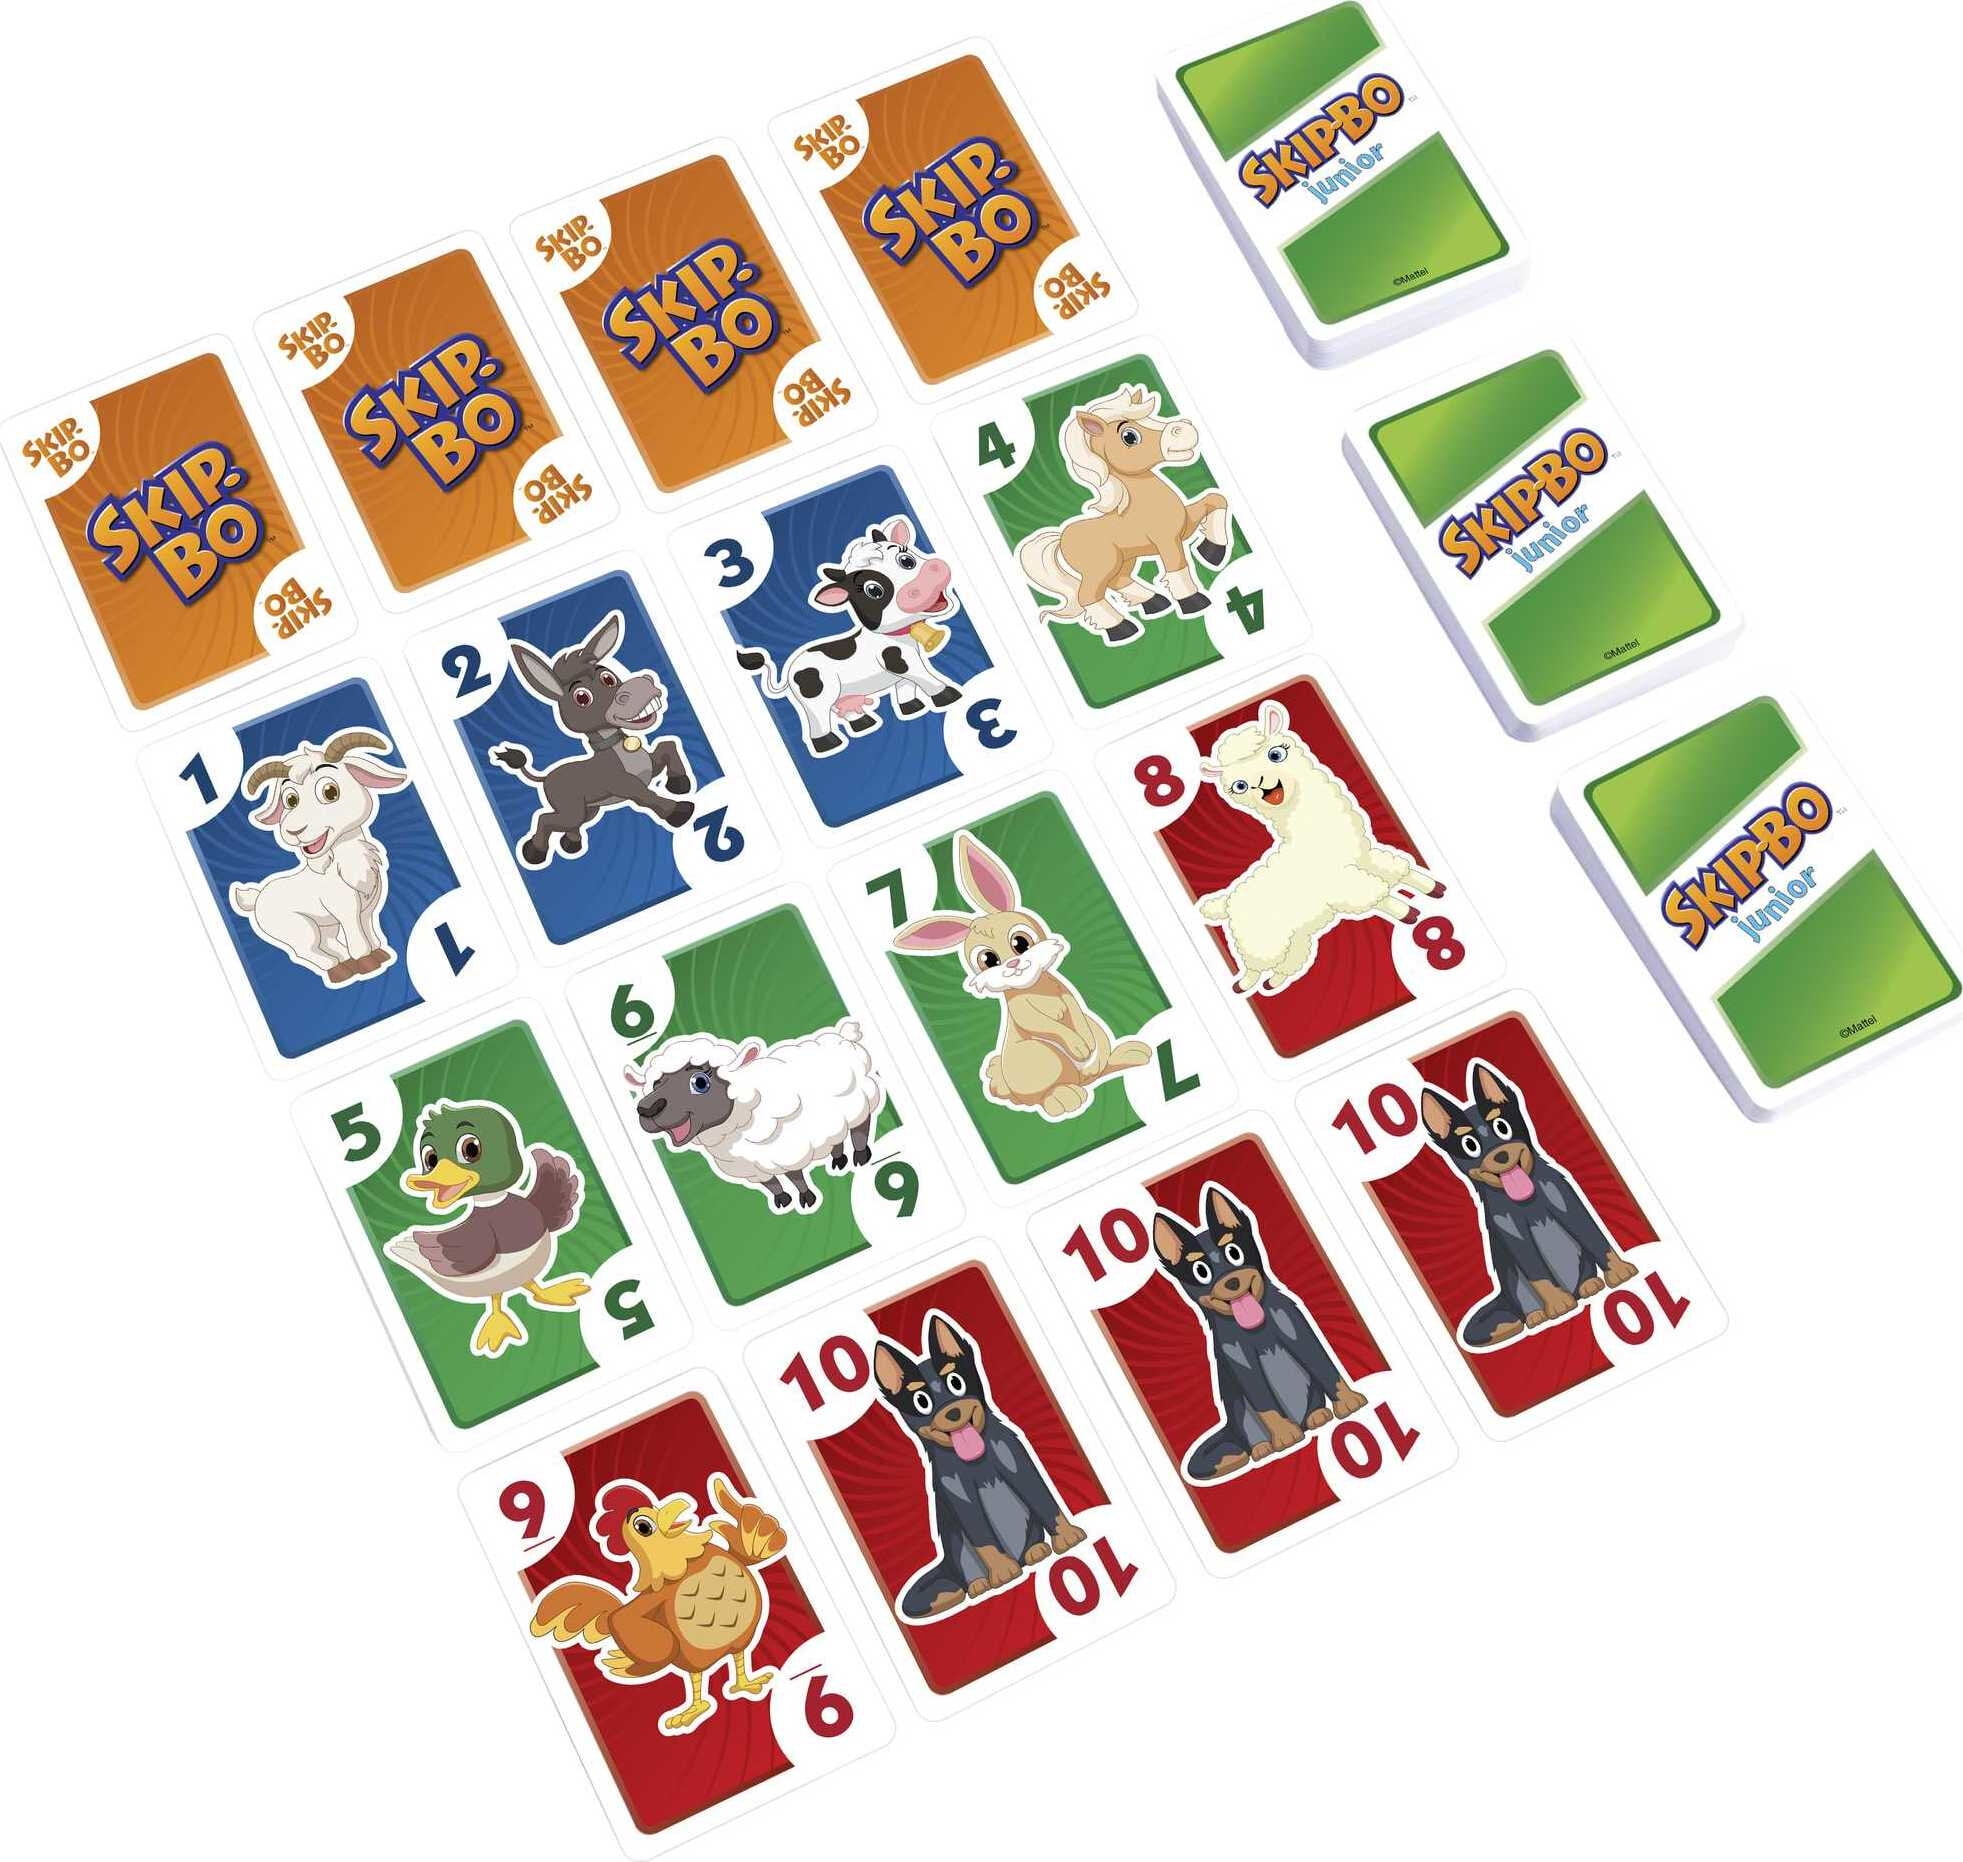 Skip-Bo Card Game: How to Play and Tricks for Winning - HobbyLark